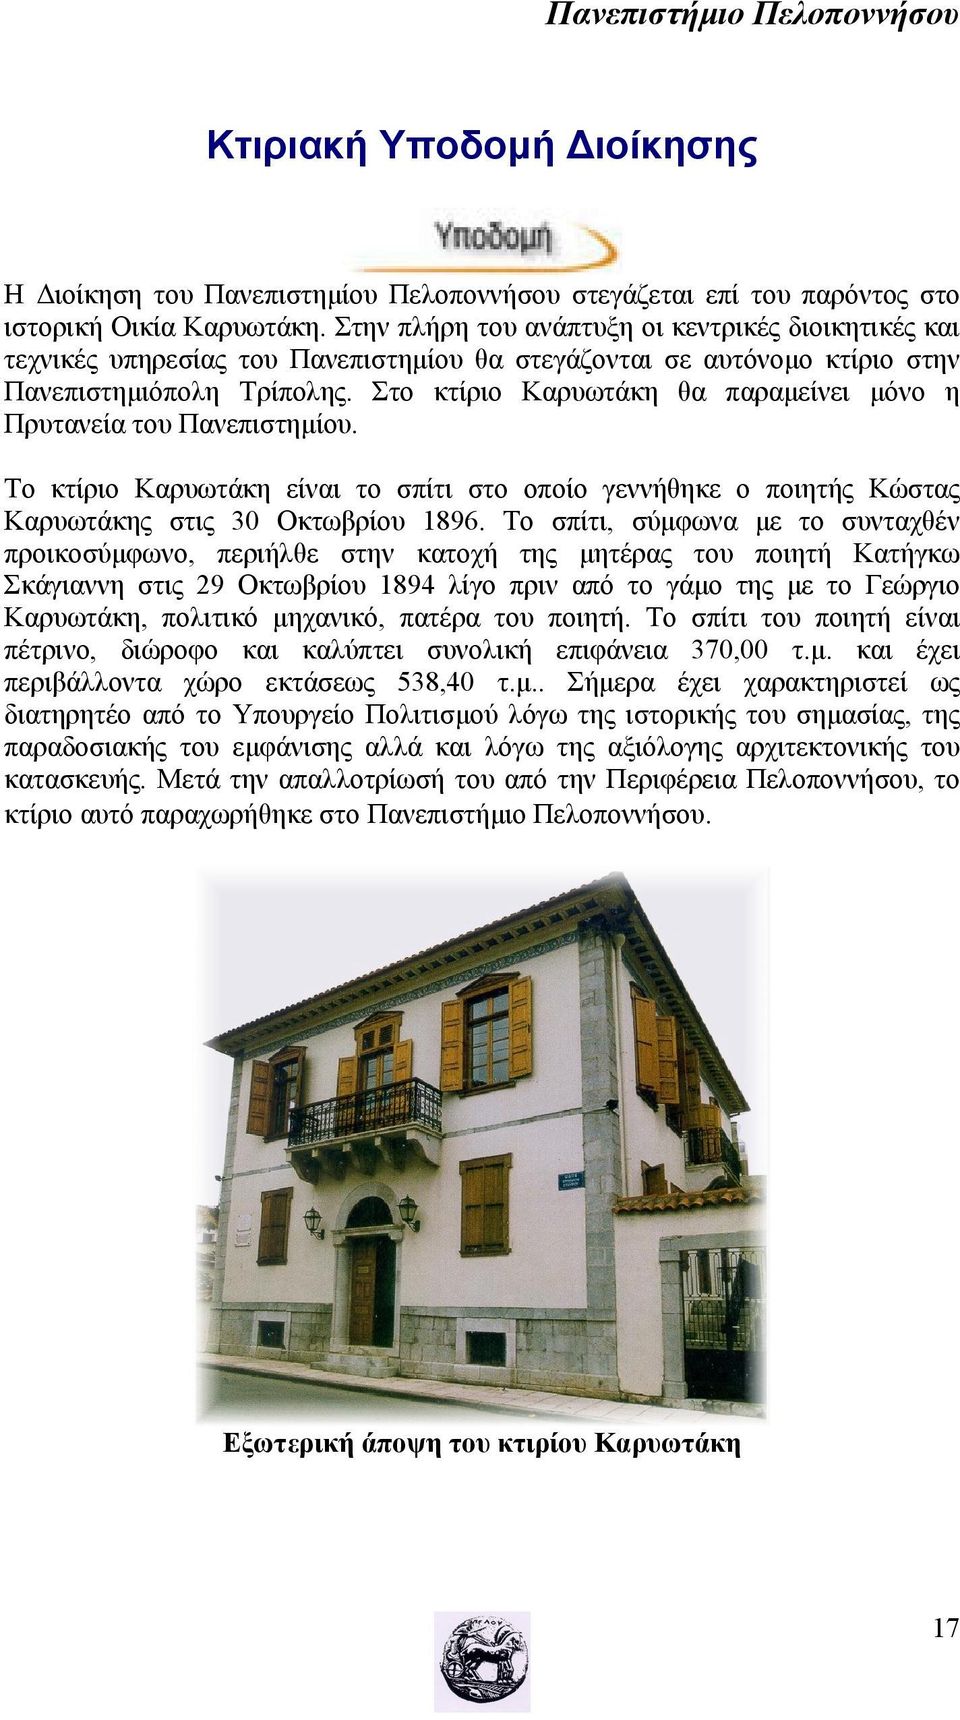 Στο κτίριο Καρυωτάκη θα παραμείνει μόνο η Πρυτανεία του Πανεπιστημίου. Το κτίριο Καρυωτάκη είναι το σπίτι στο οποίο γεννήθηκε ο ποιητής Κώστας Καρυωτάκης στις 30 Οκτωβρίου 1896.